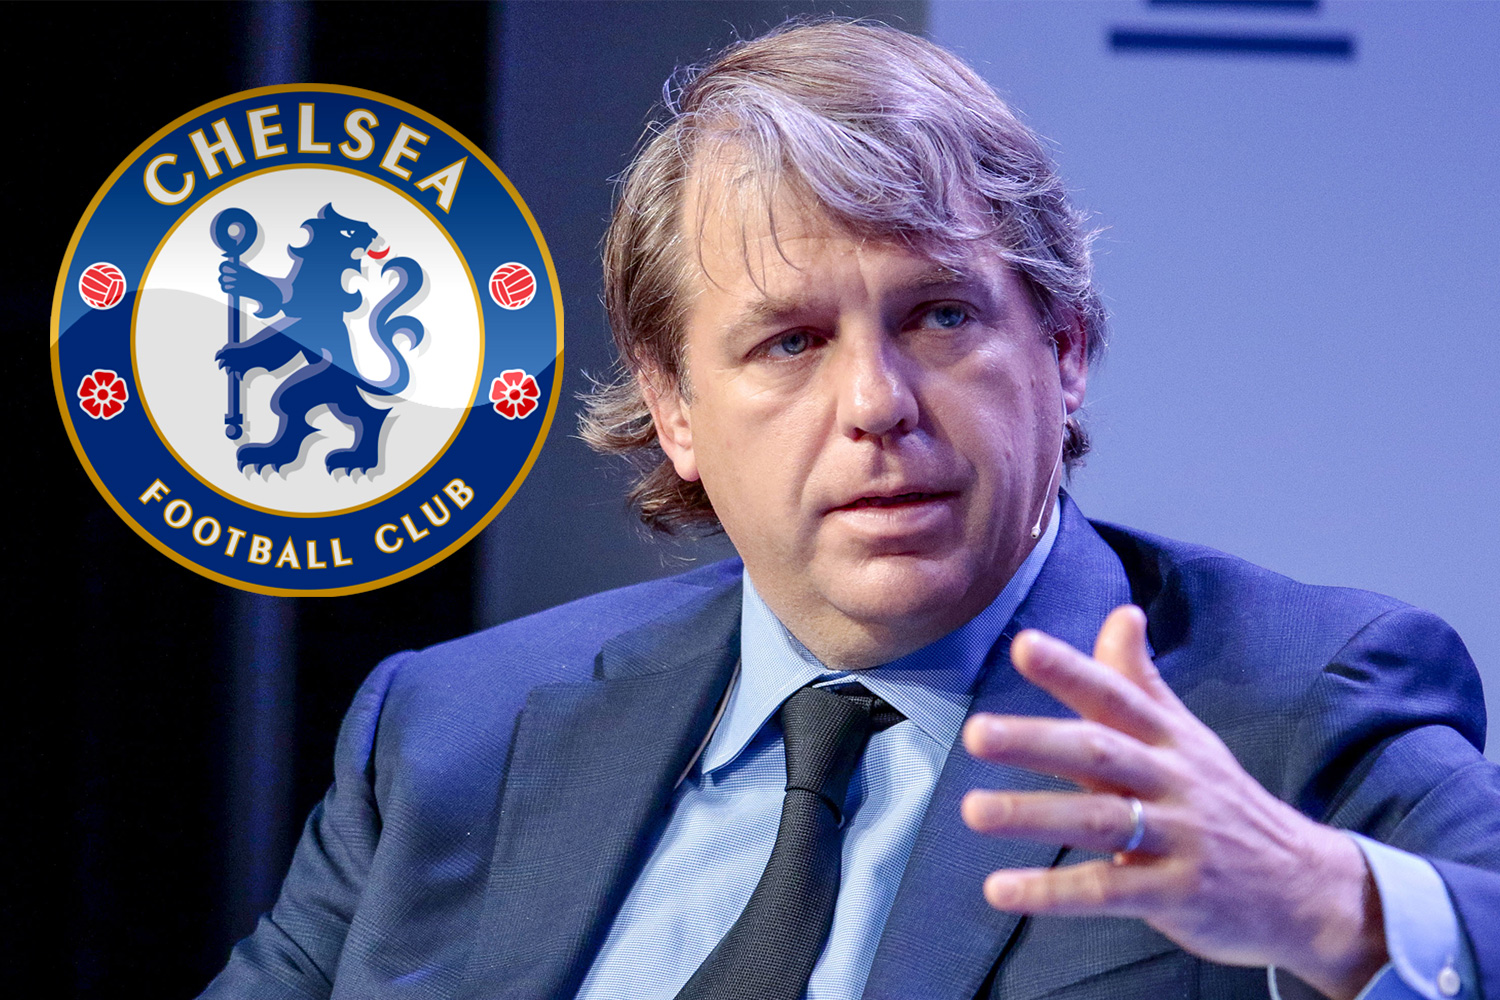 Pembaruan Langsung Pengambilalihan Chelsea: Portugal menyetujui penjualan Chelsea FC oleh Roman Abramovich, Pemerintah Inggris menyetujui pengambilalihan kepada Todd Boehly - Lihat